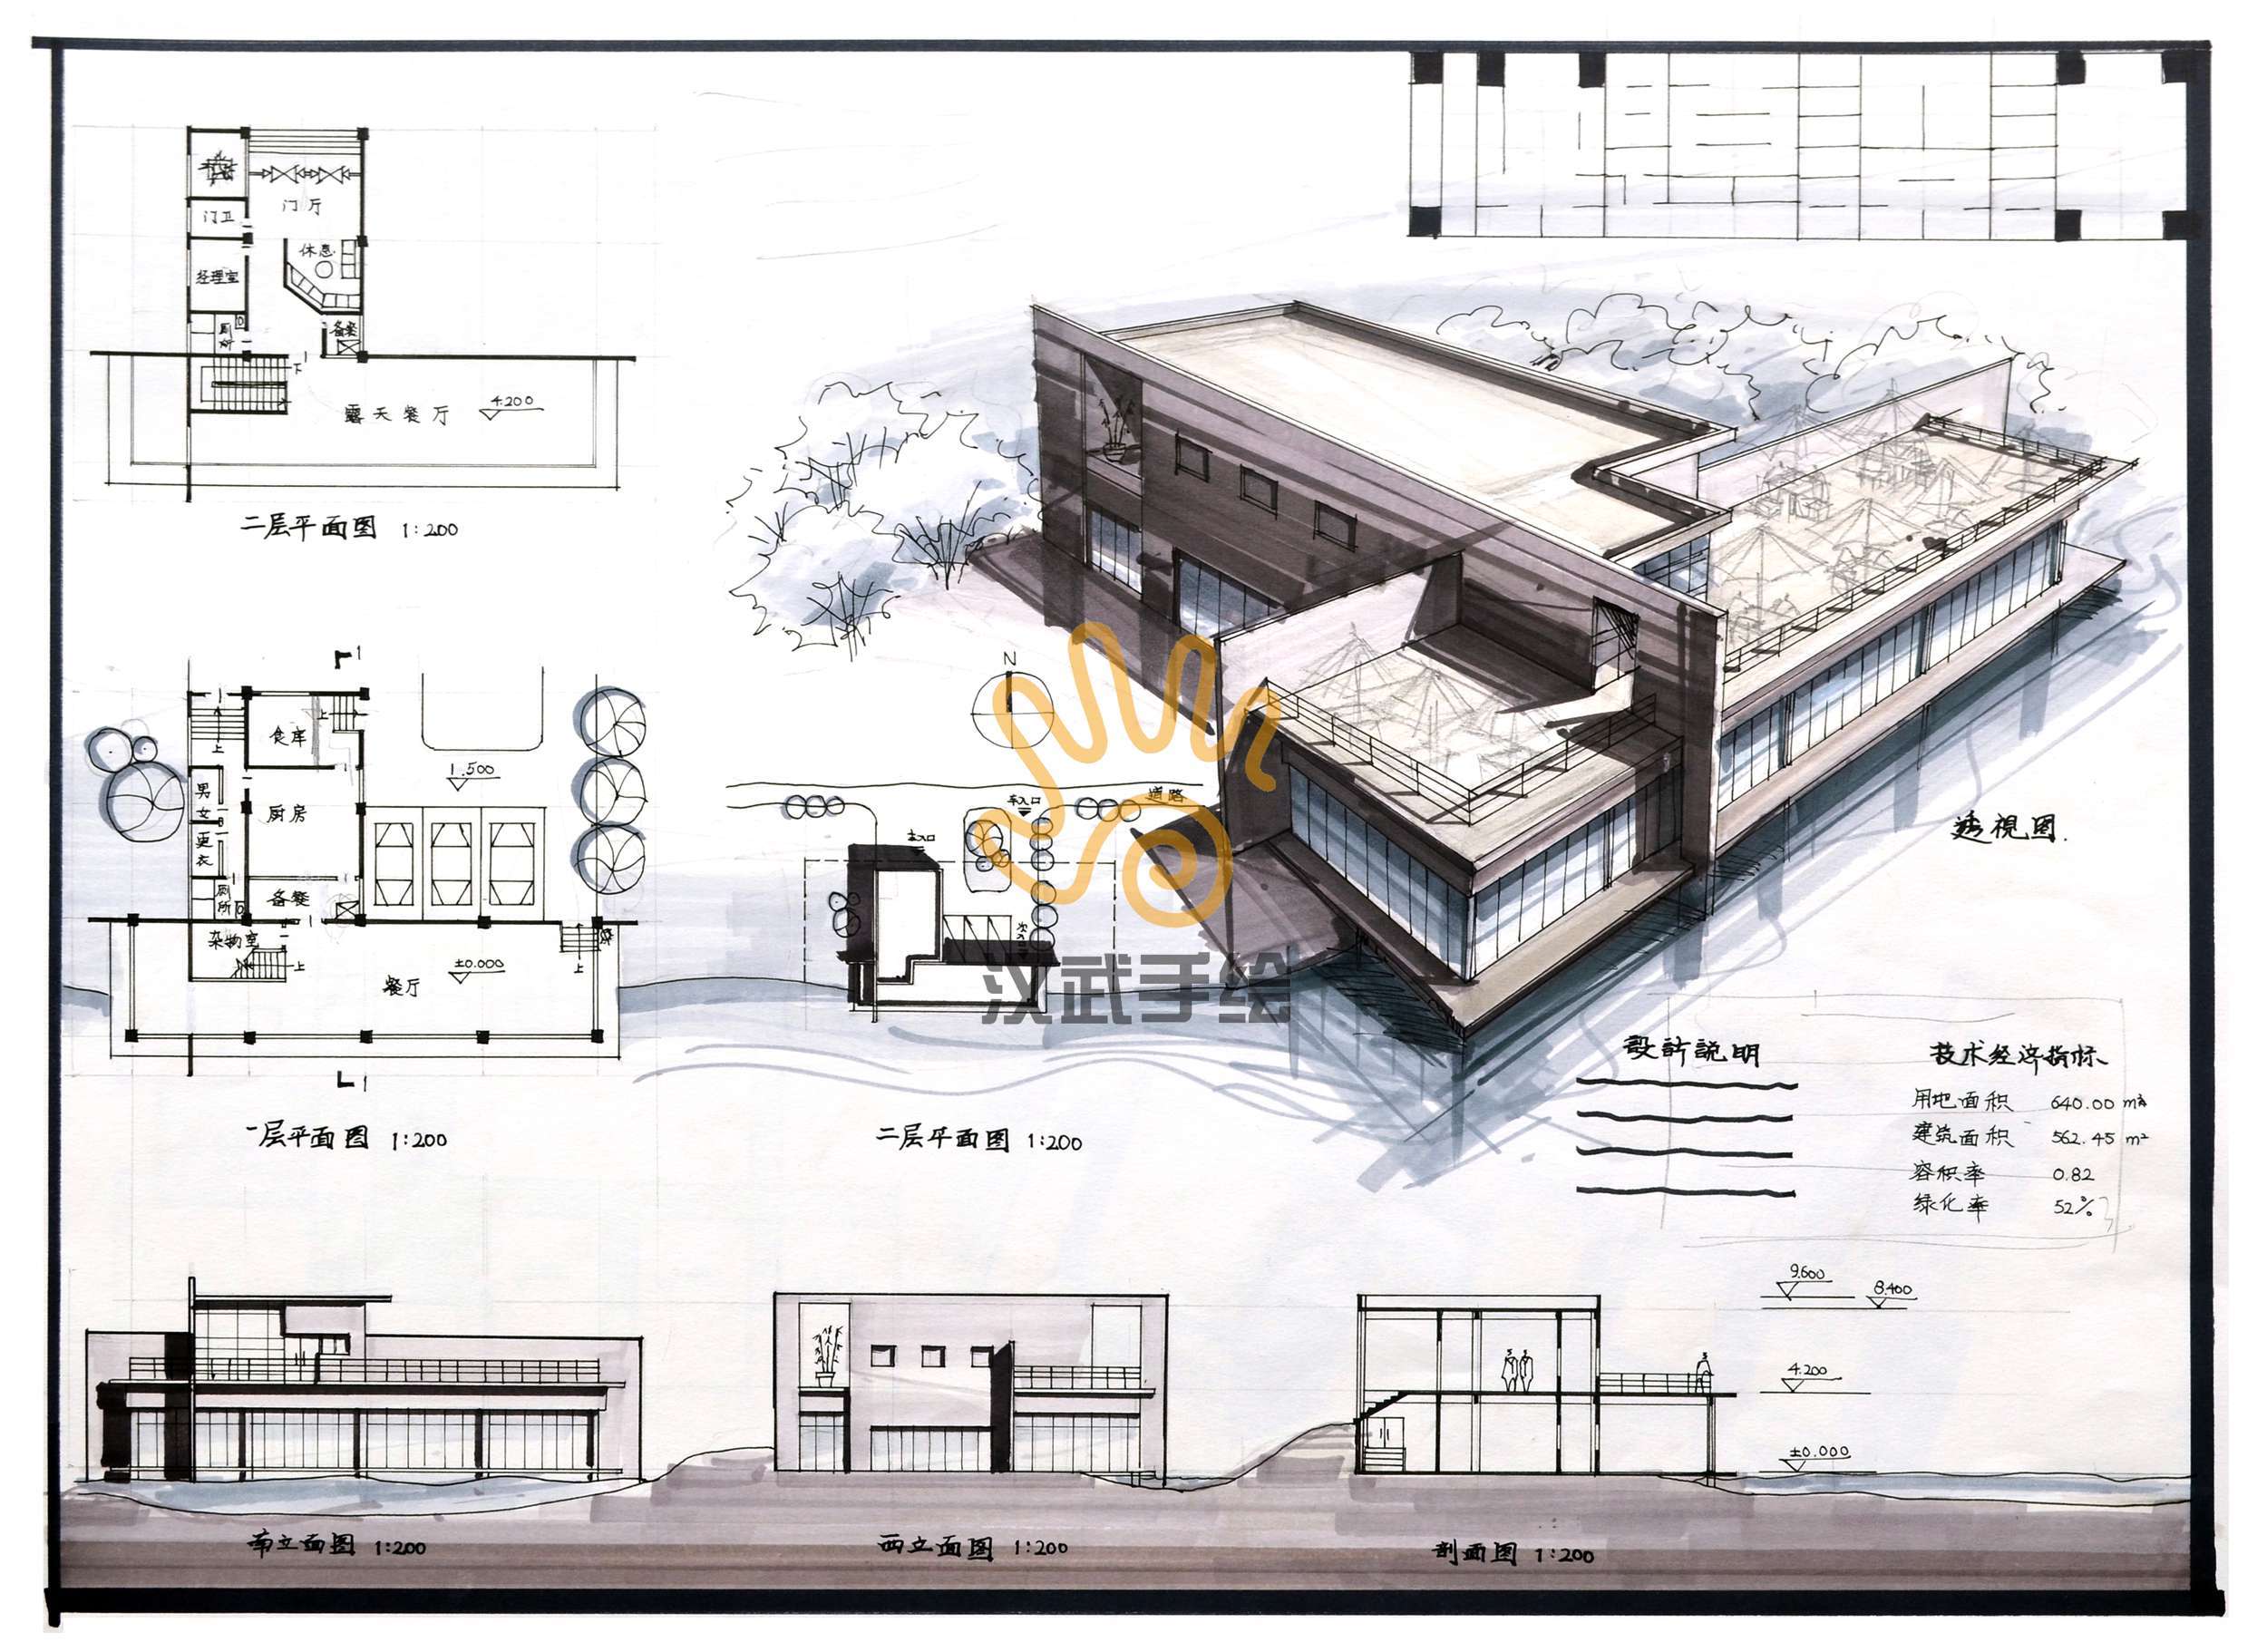 3录 功能分析 建筑空间平面组合设计 建筑内部空间组合设计